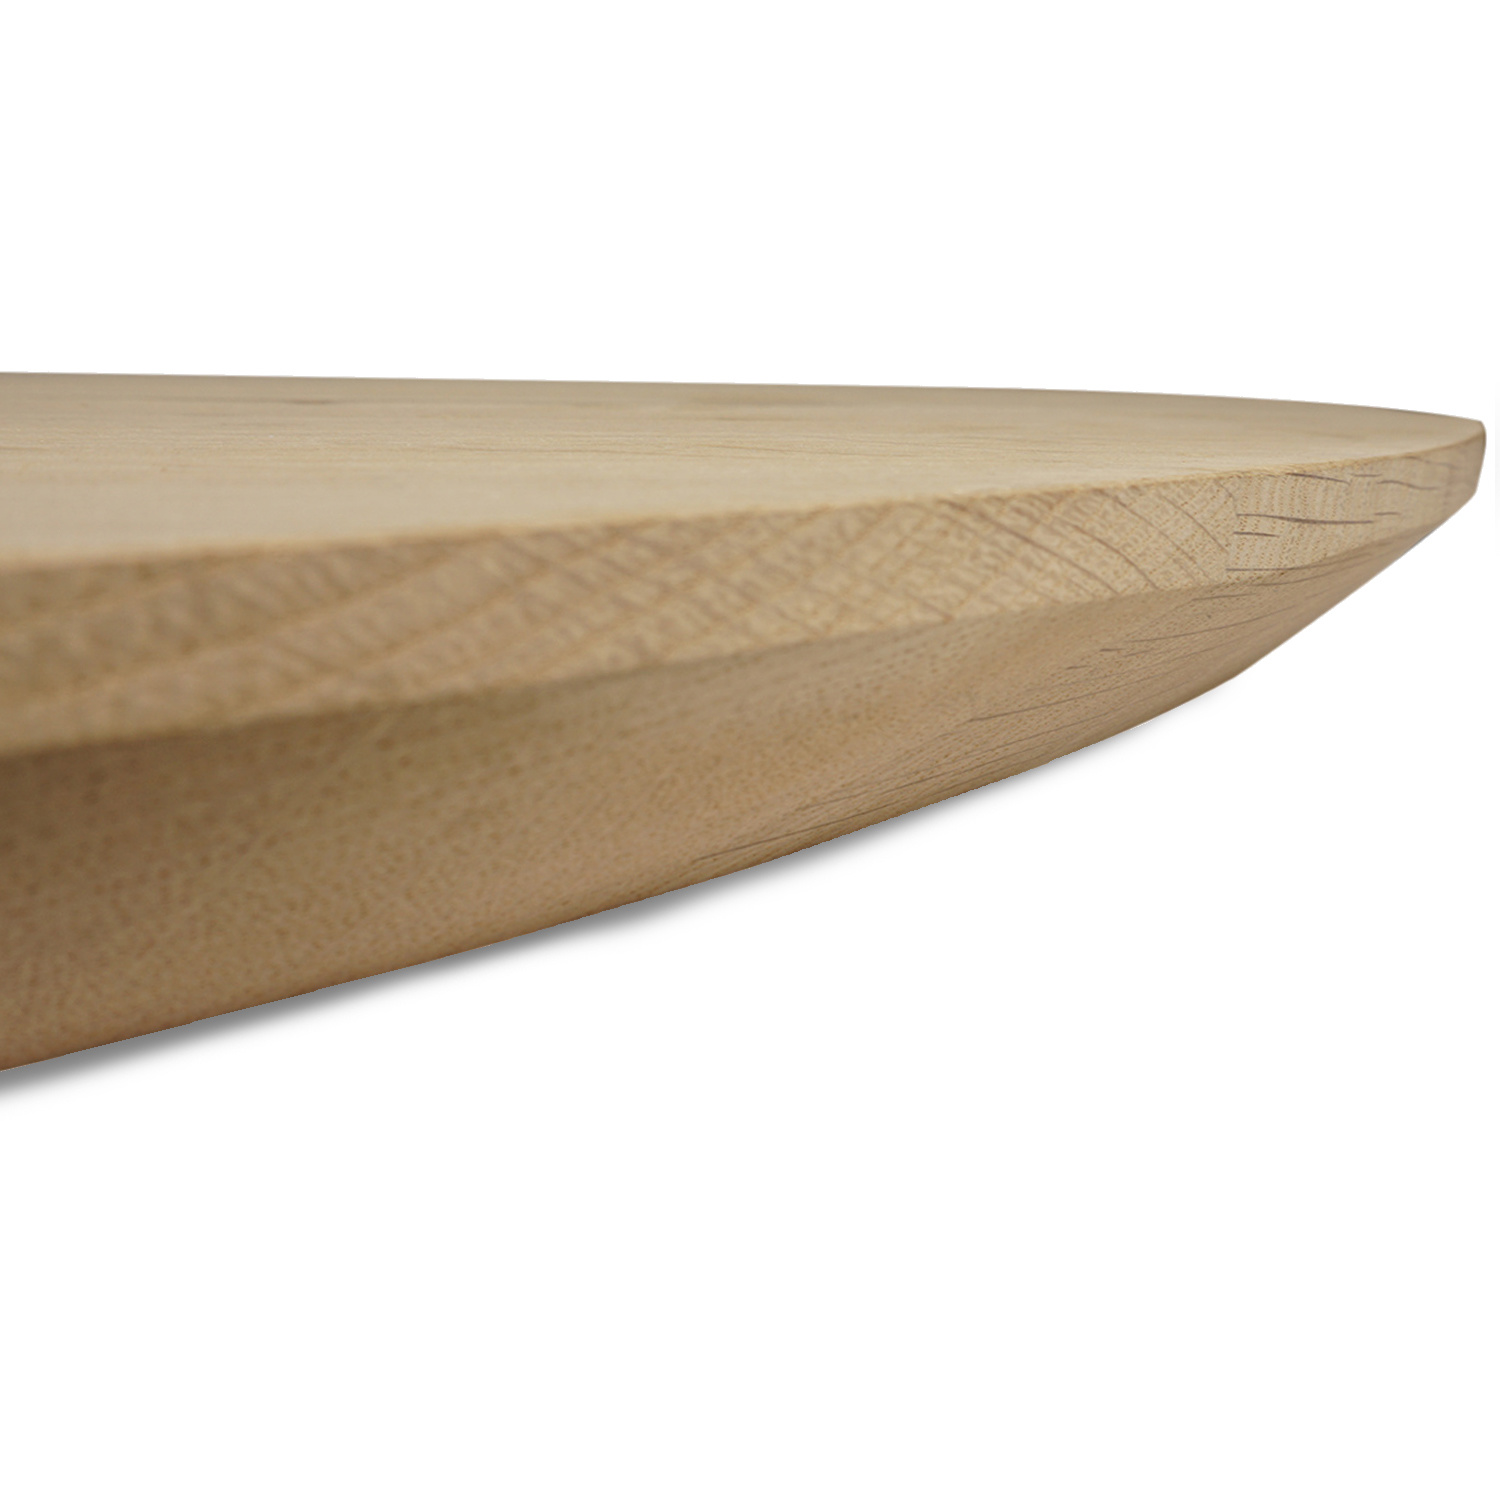  Deens ovaal eiken tafelblad - 4 cm dik (1-laag) - Diverse afmetingen - rustiek Europees eikenhout - met brede lamellen (circa 10-12 cm) - verlijmd kd 8-12%